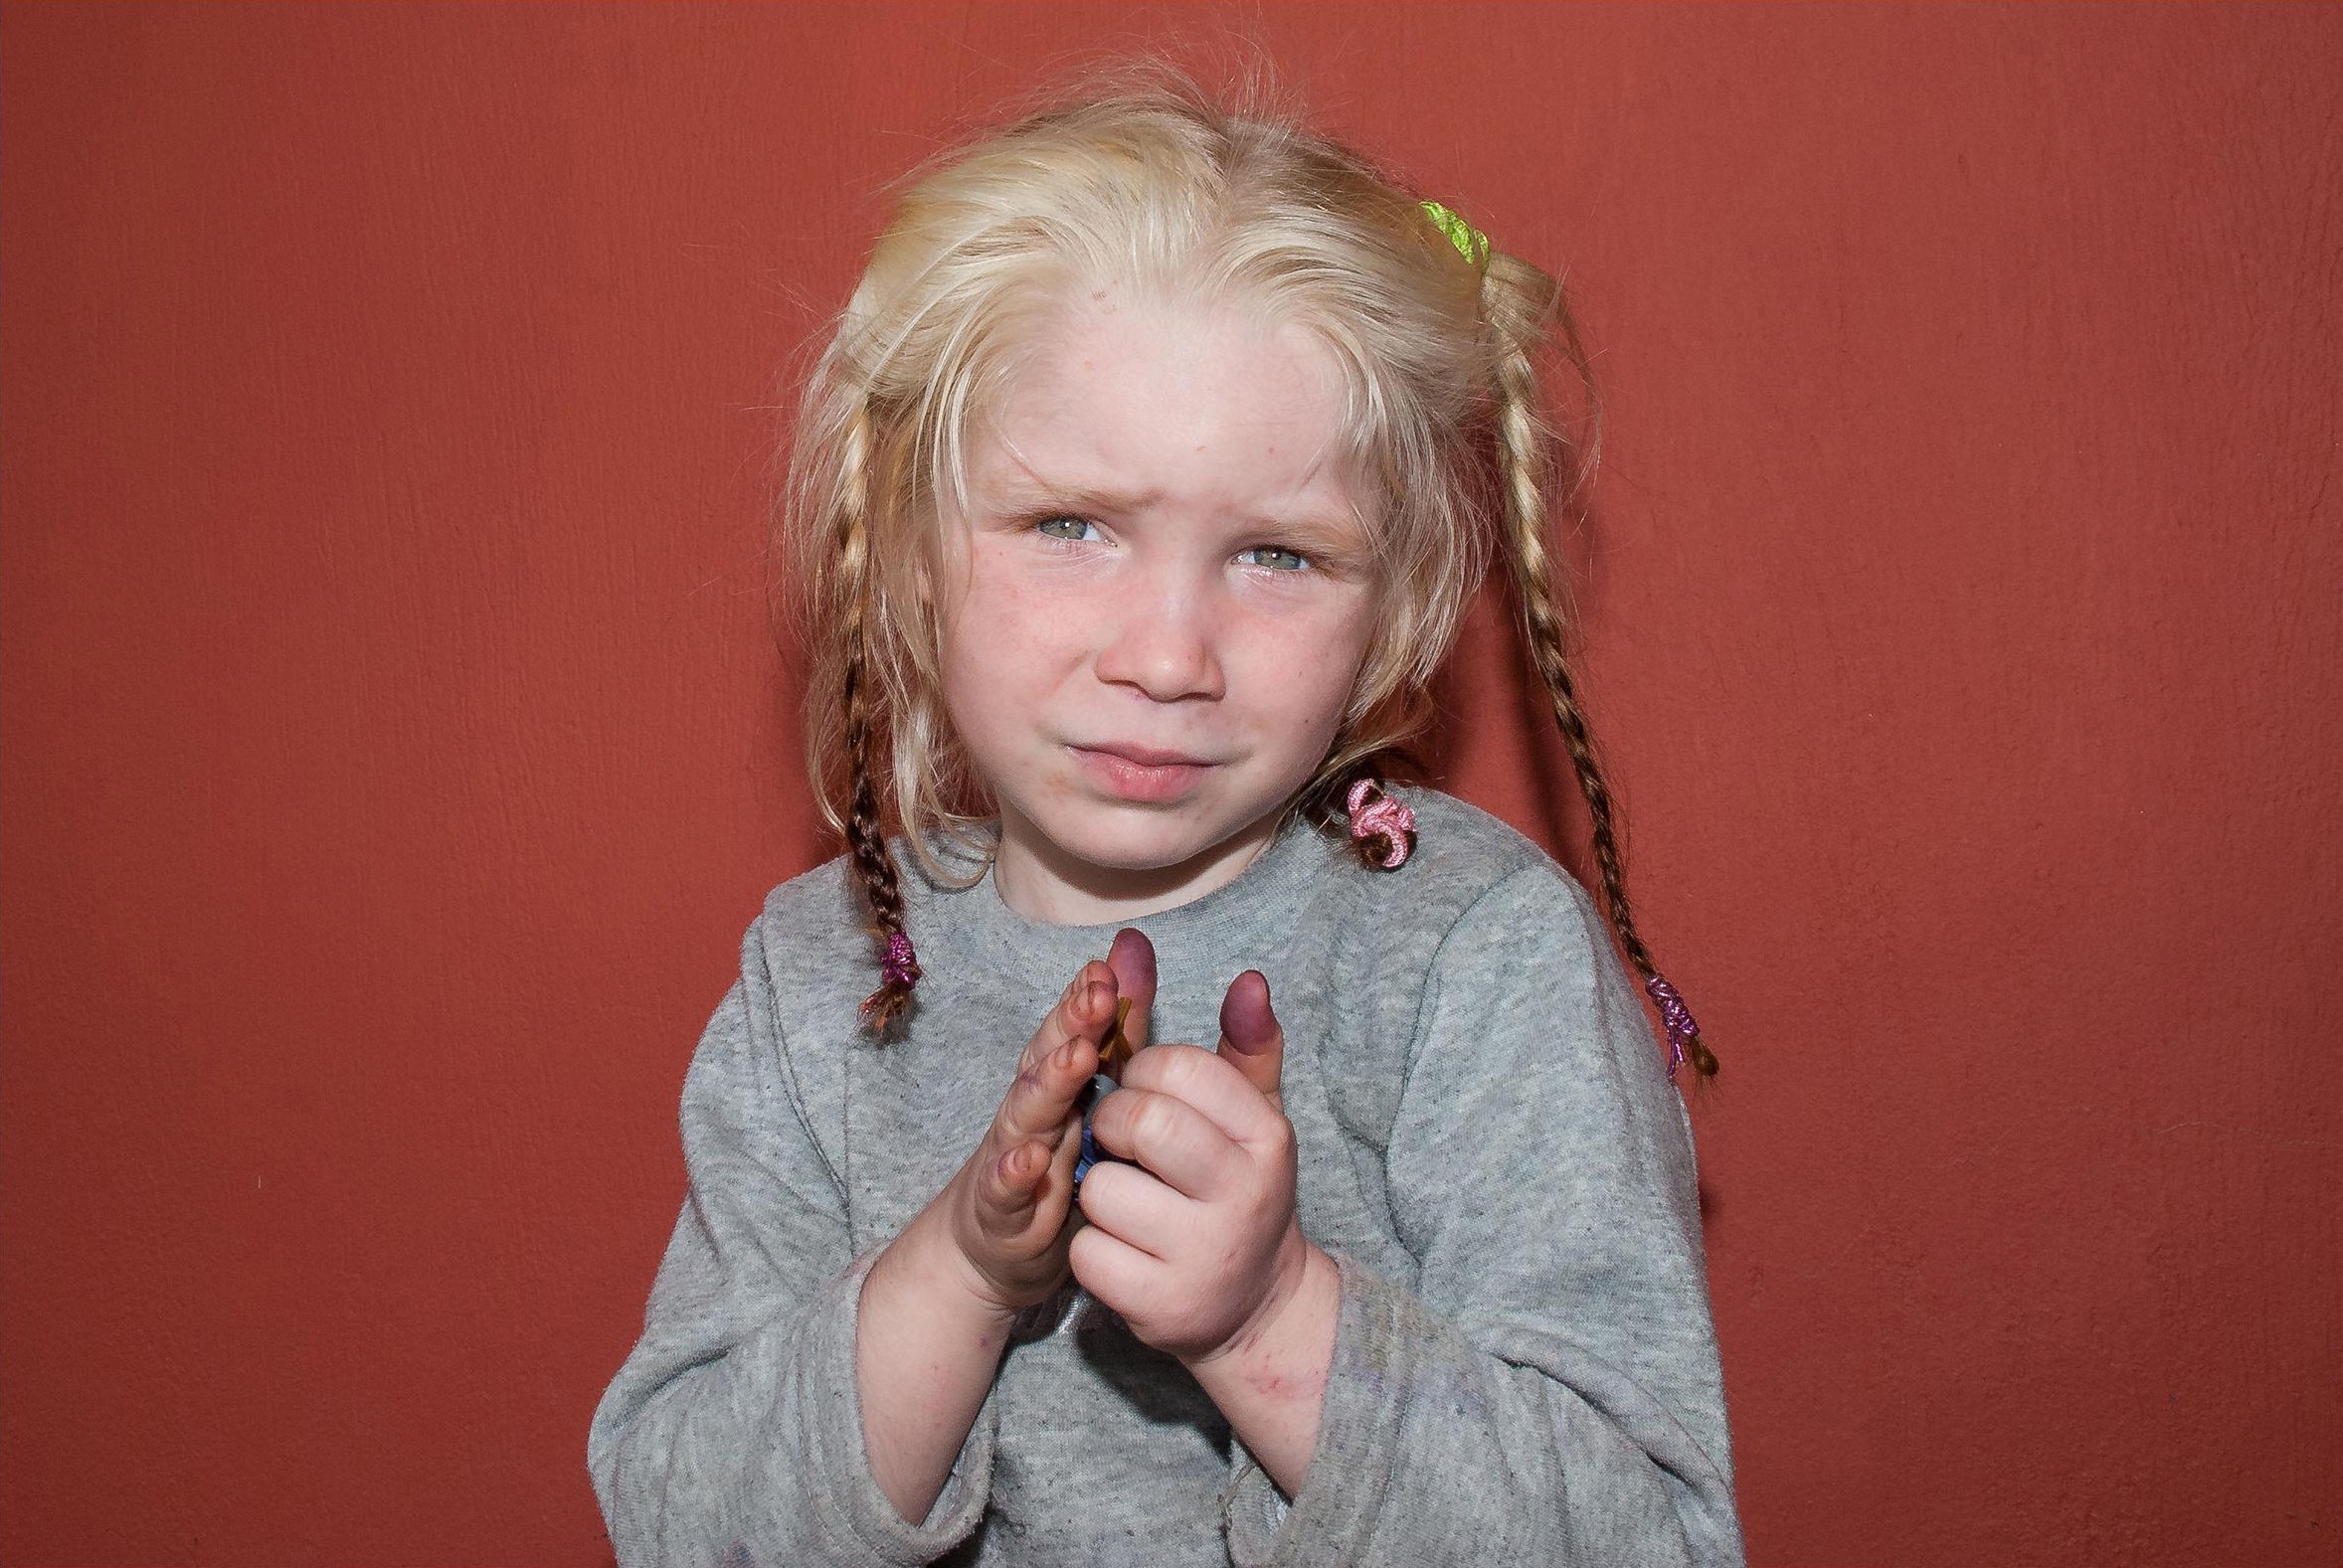 Κανείς δεν ψάχνει τη μικρή Μαρία – Δε βρίσκεται στη λίστα των παιδιών που αναζητούνται από την Interpol